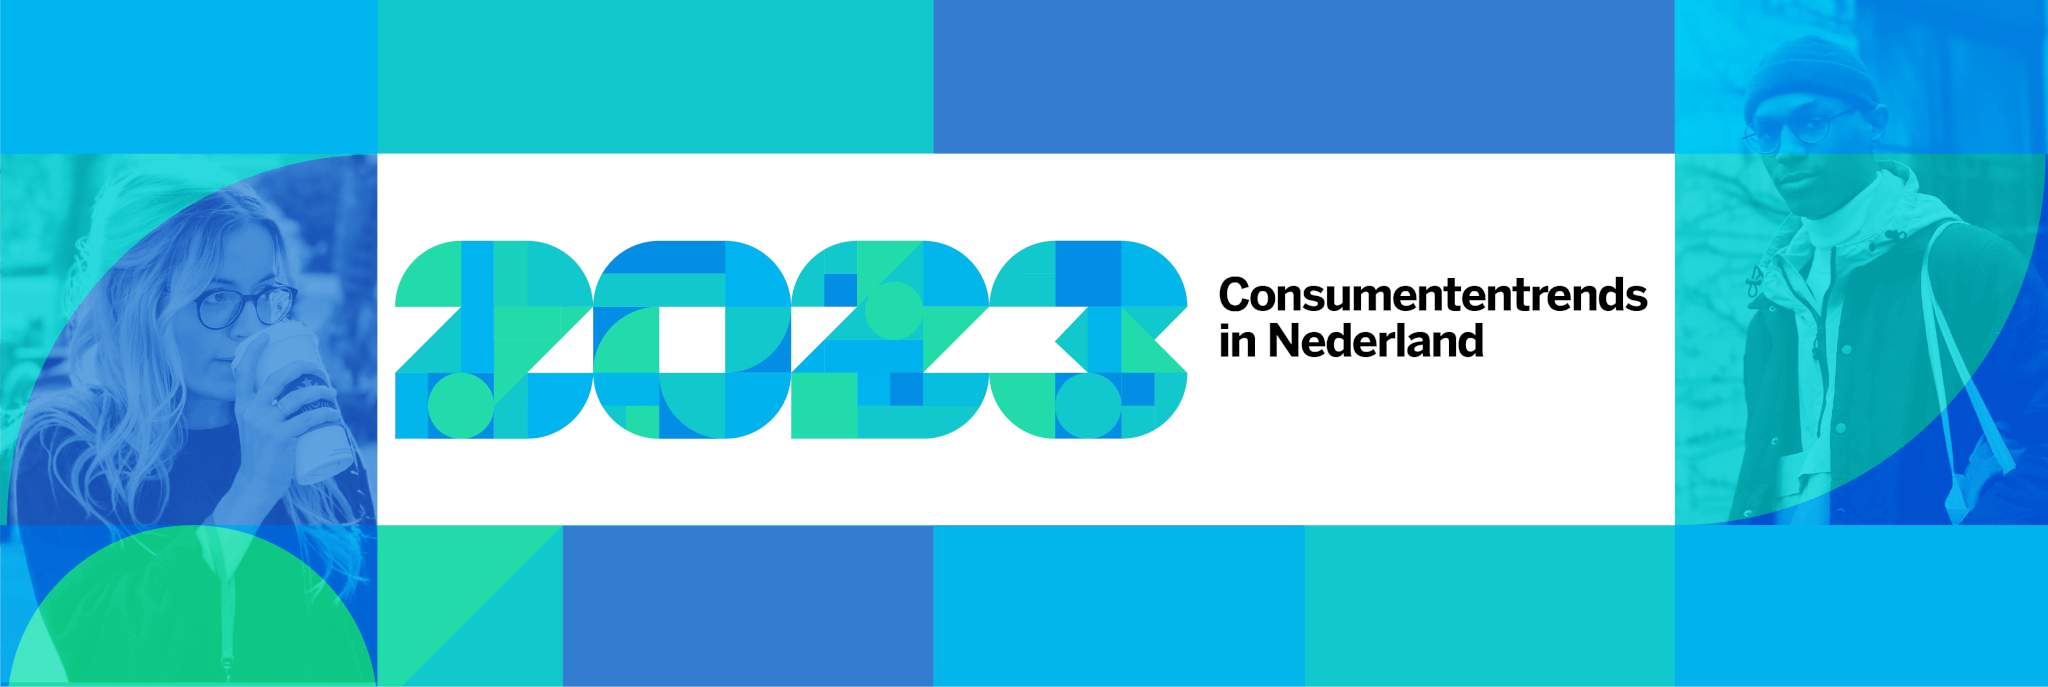 Consumententrends in Nederland in 2023